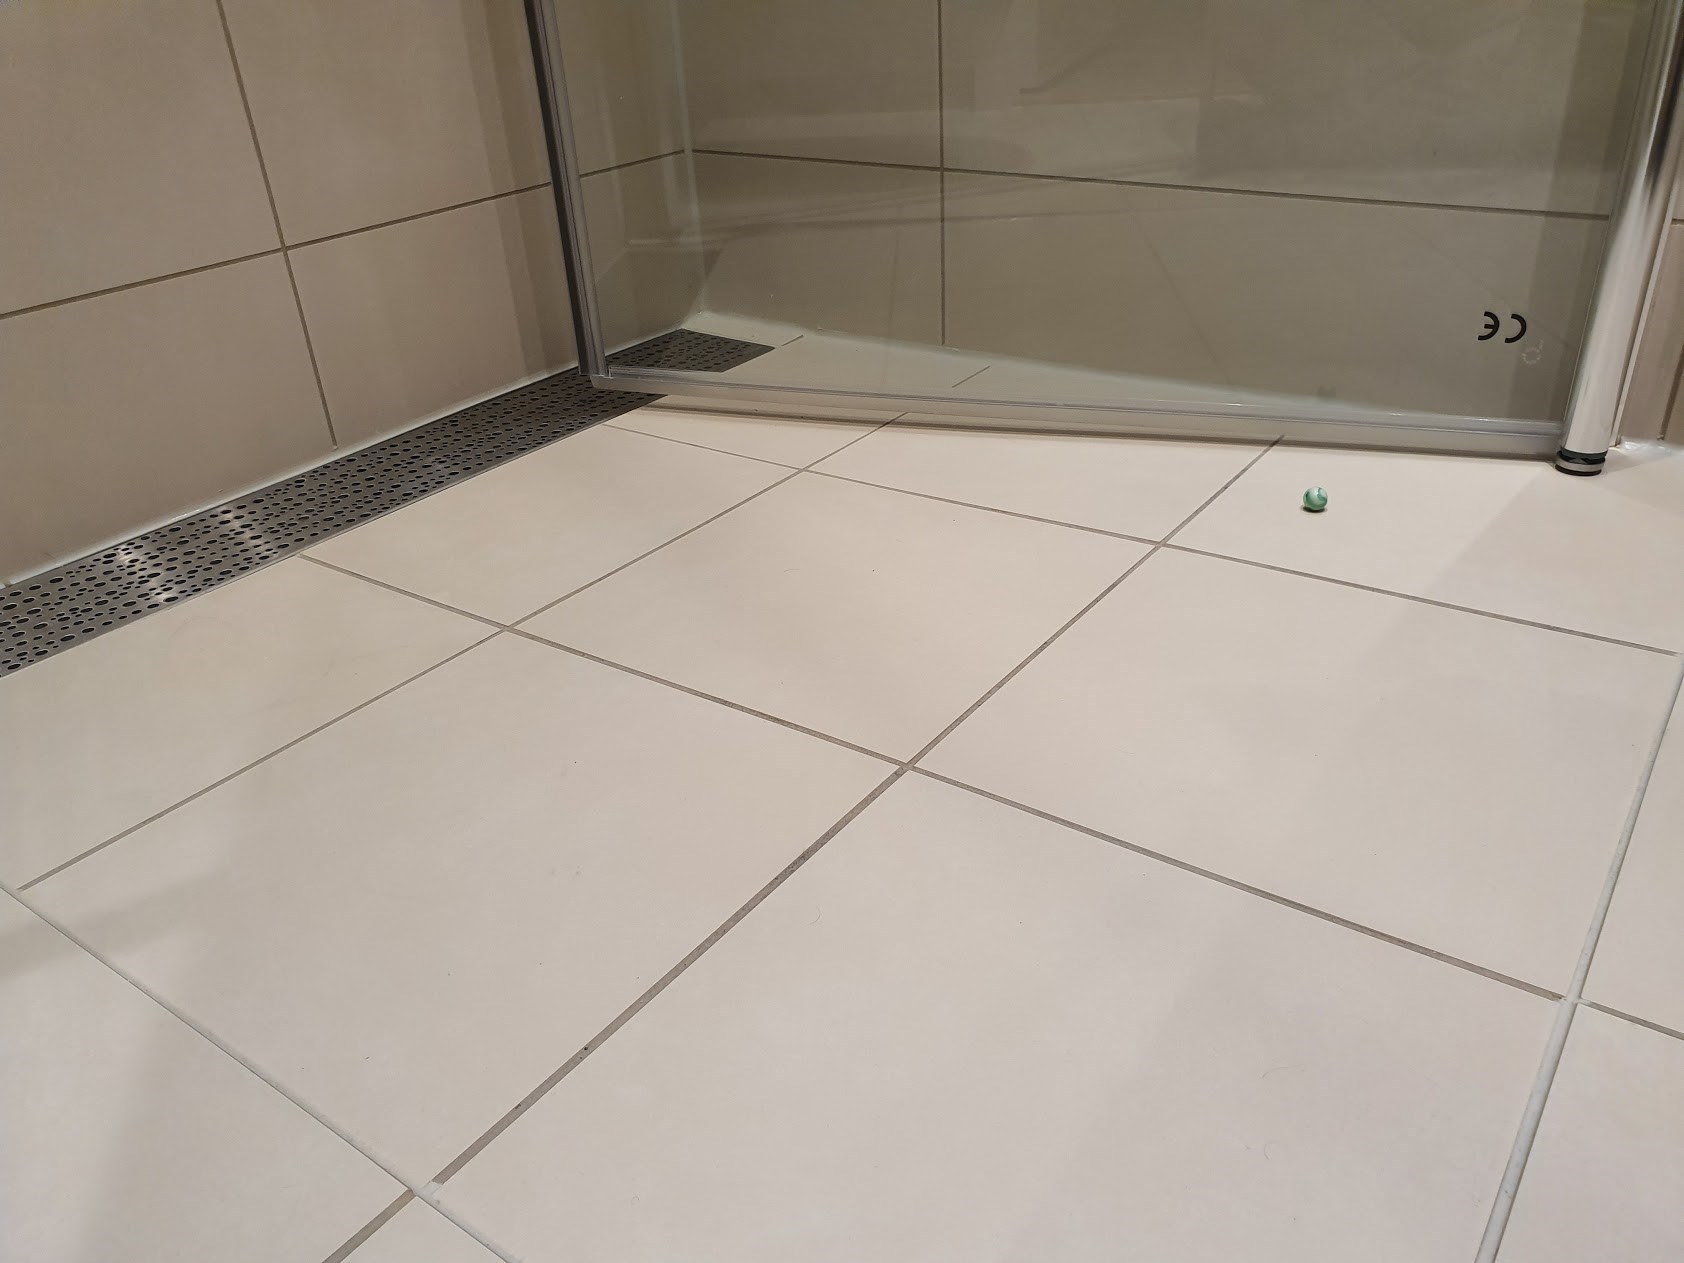 Problemer med fall i dusj i ny leilighet - dusj-1.jpg - joyful